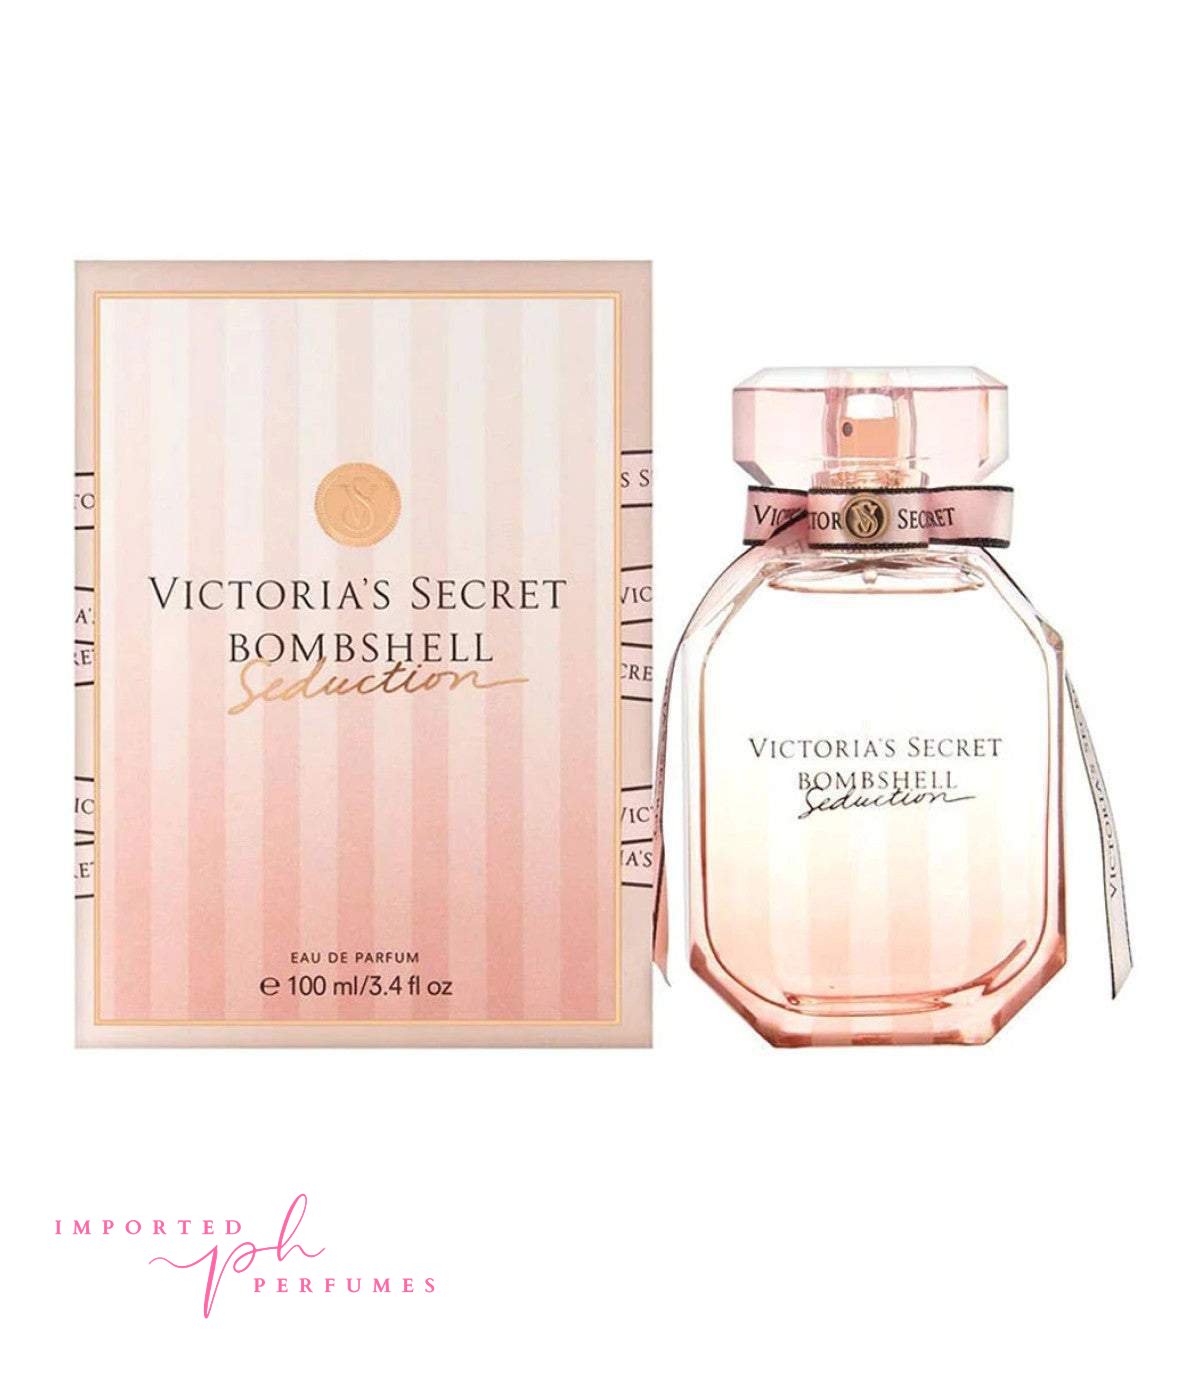 Bombshell Seduction by Victoria's Secret for Women 3.4 oz Eau De Parfum-Imported Perfumes Co-bombshell,bombshell seduction,seduction,Victoria Secret,women